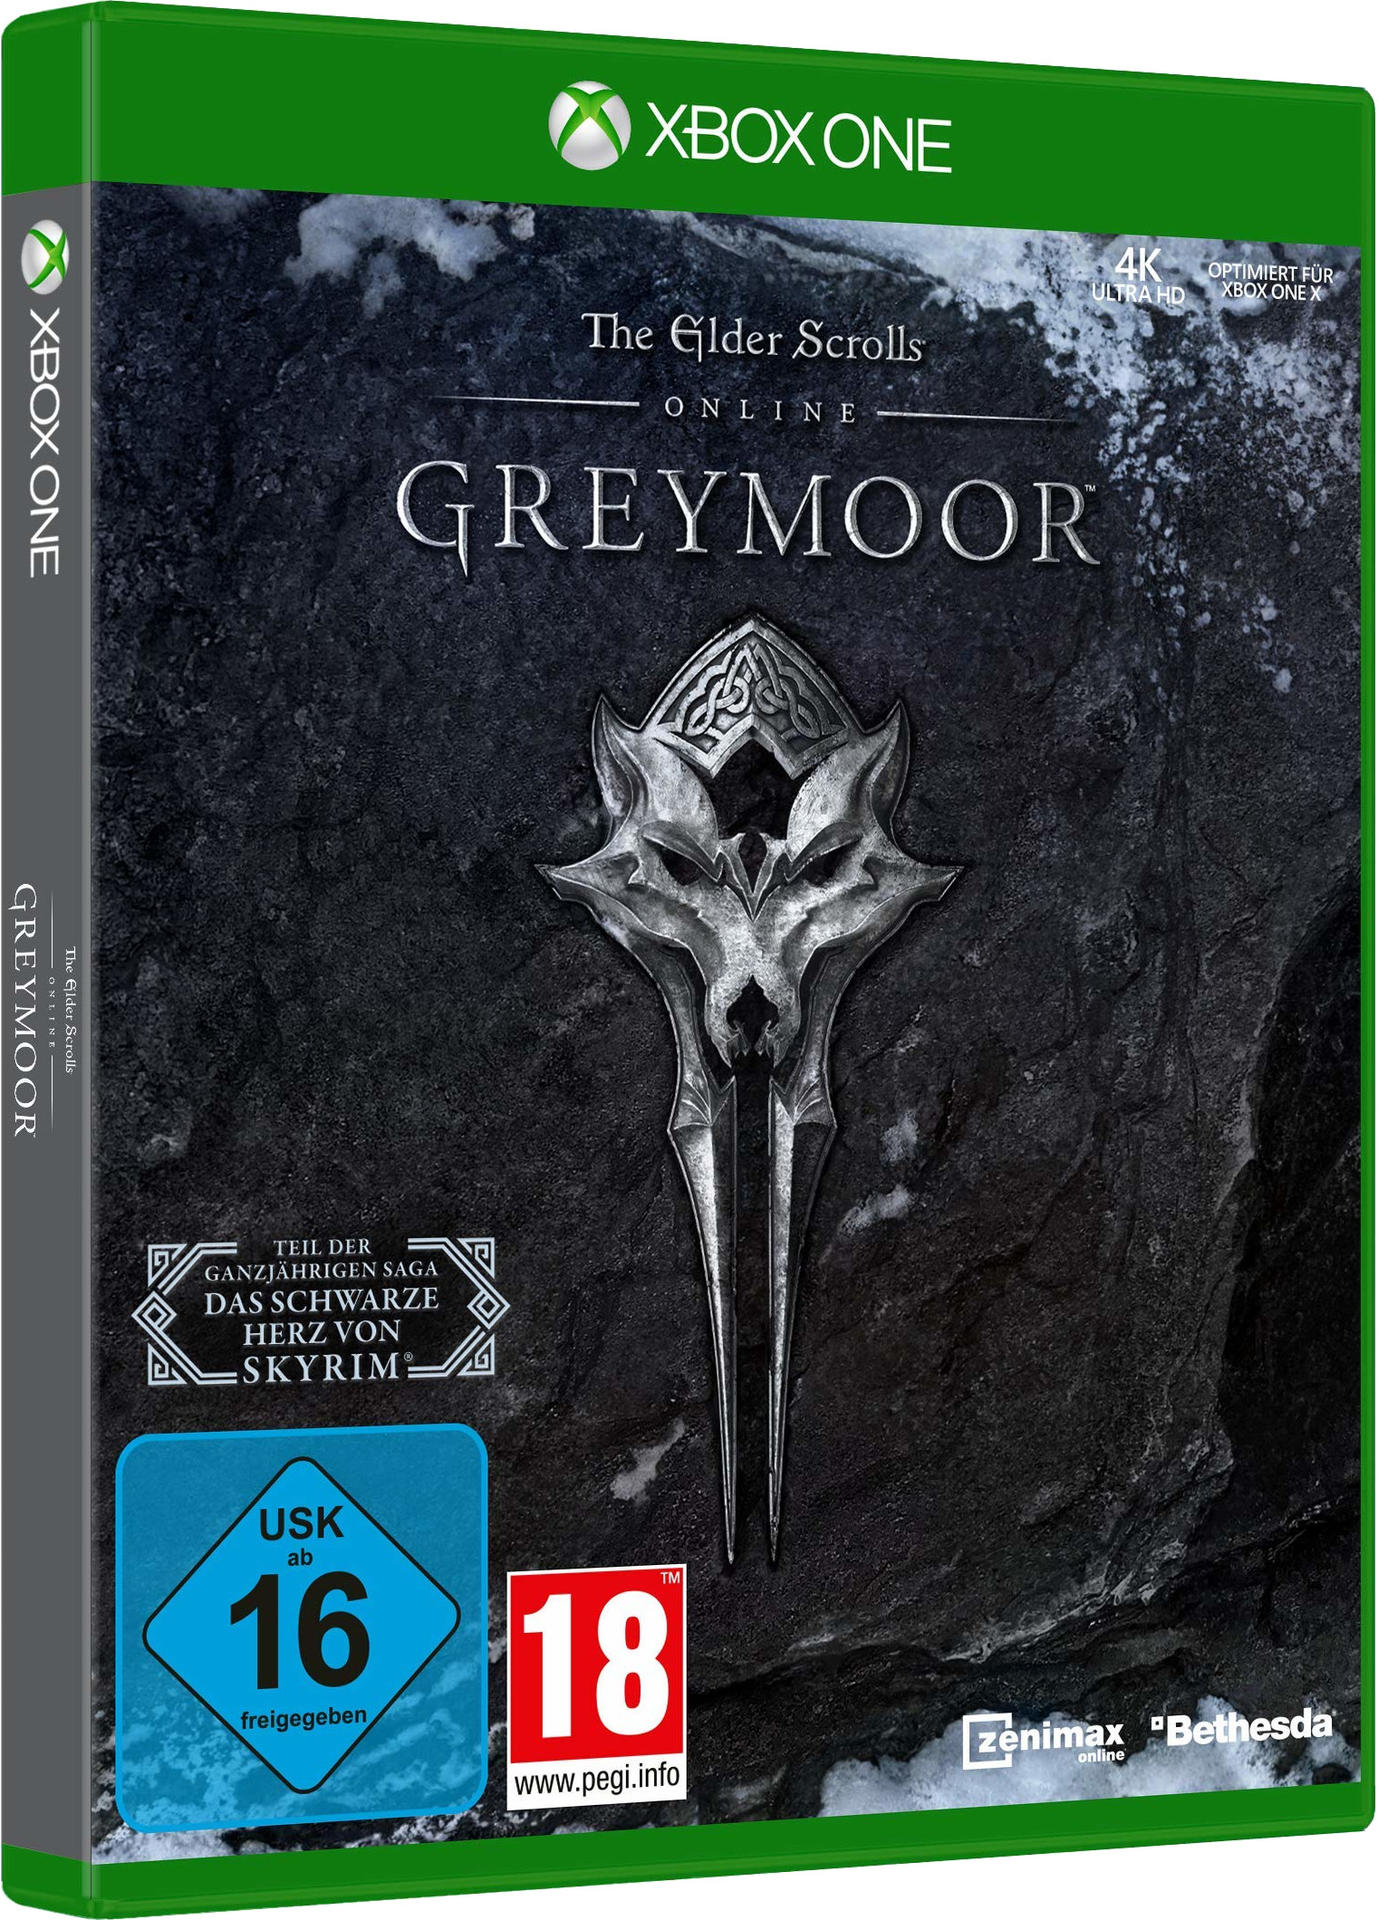 Online: One] Scrolls Elder - [Xbox The Greymoor